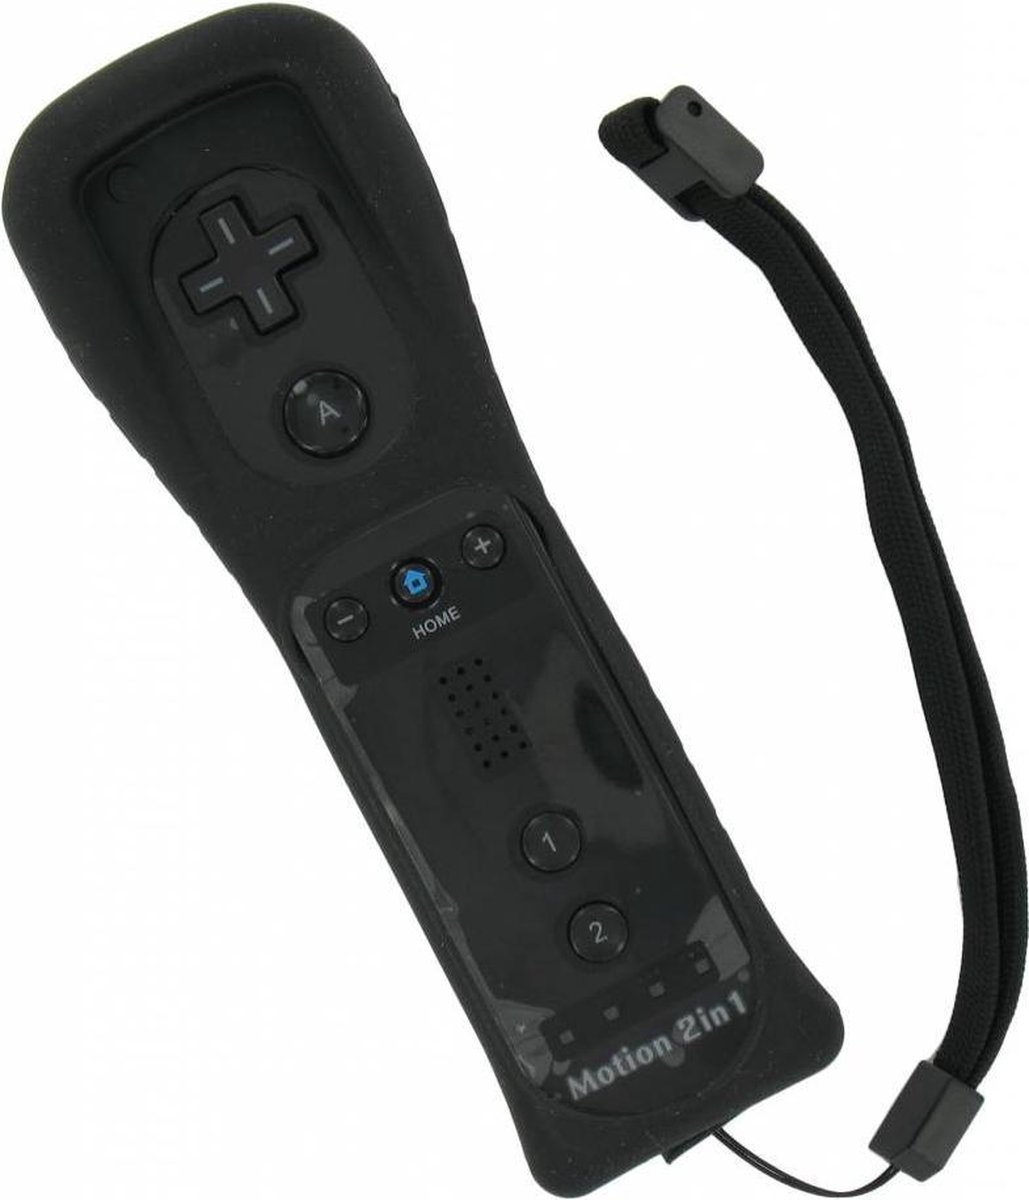 Manette Dolphix Wii Motion Plus pour Nintendo Wii, Wii Mini et Wii U / noir